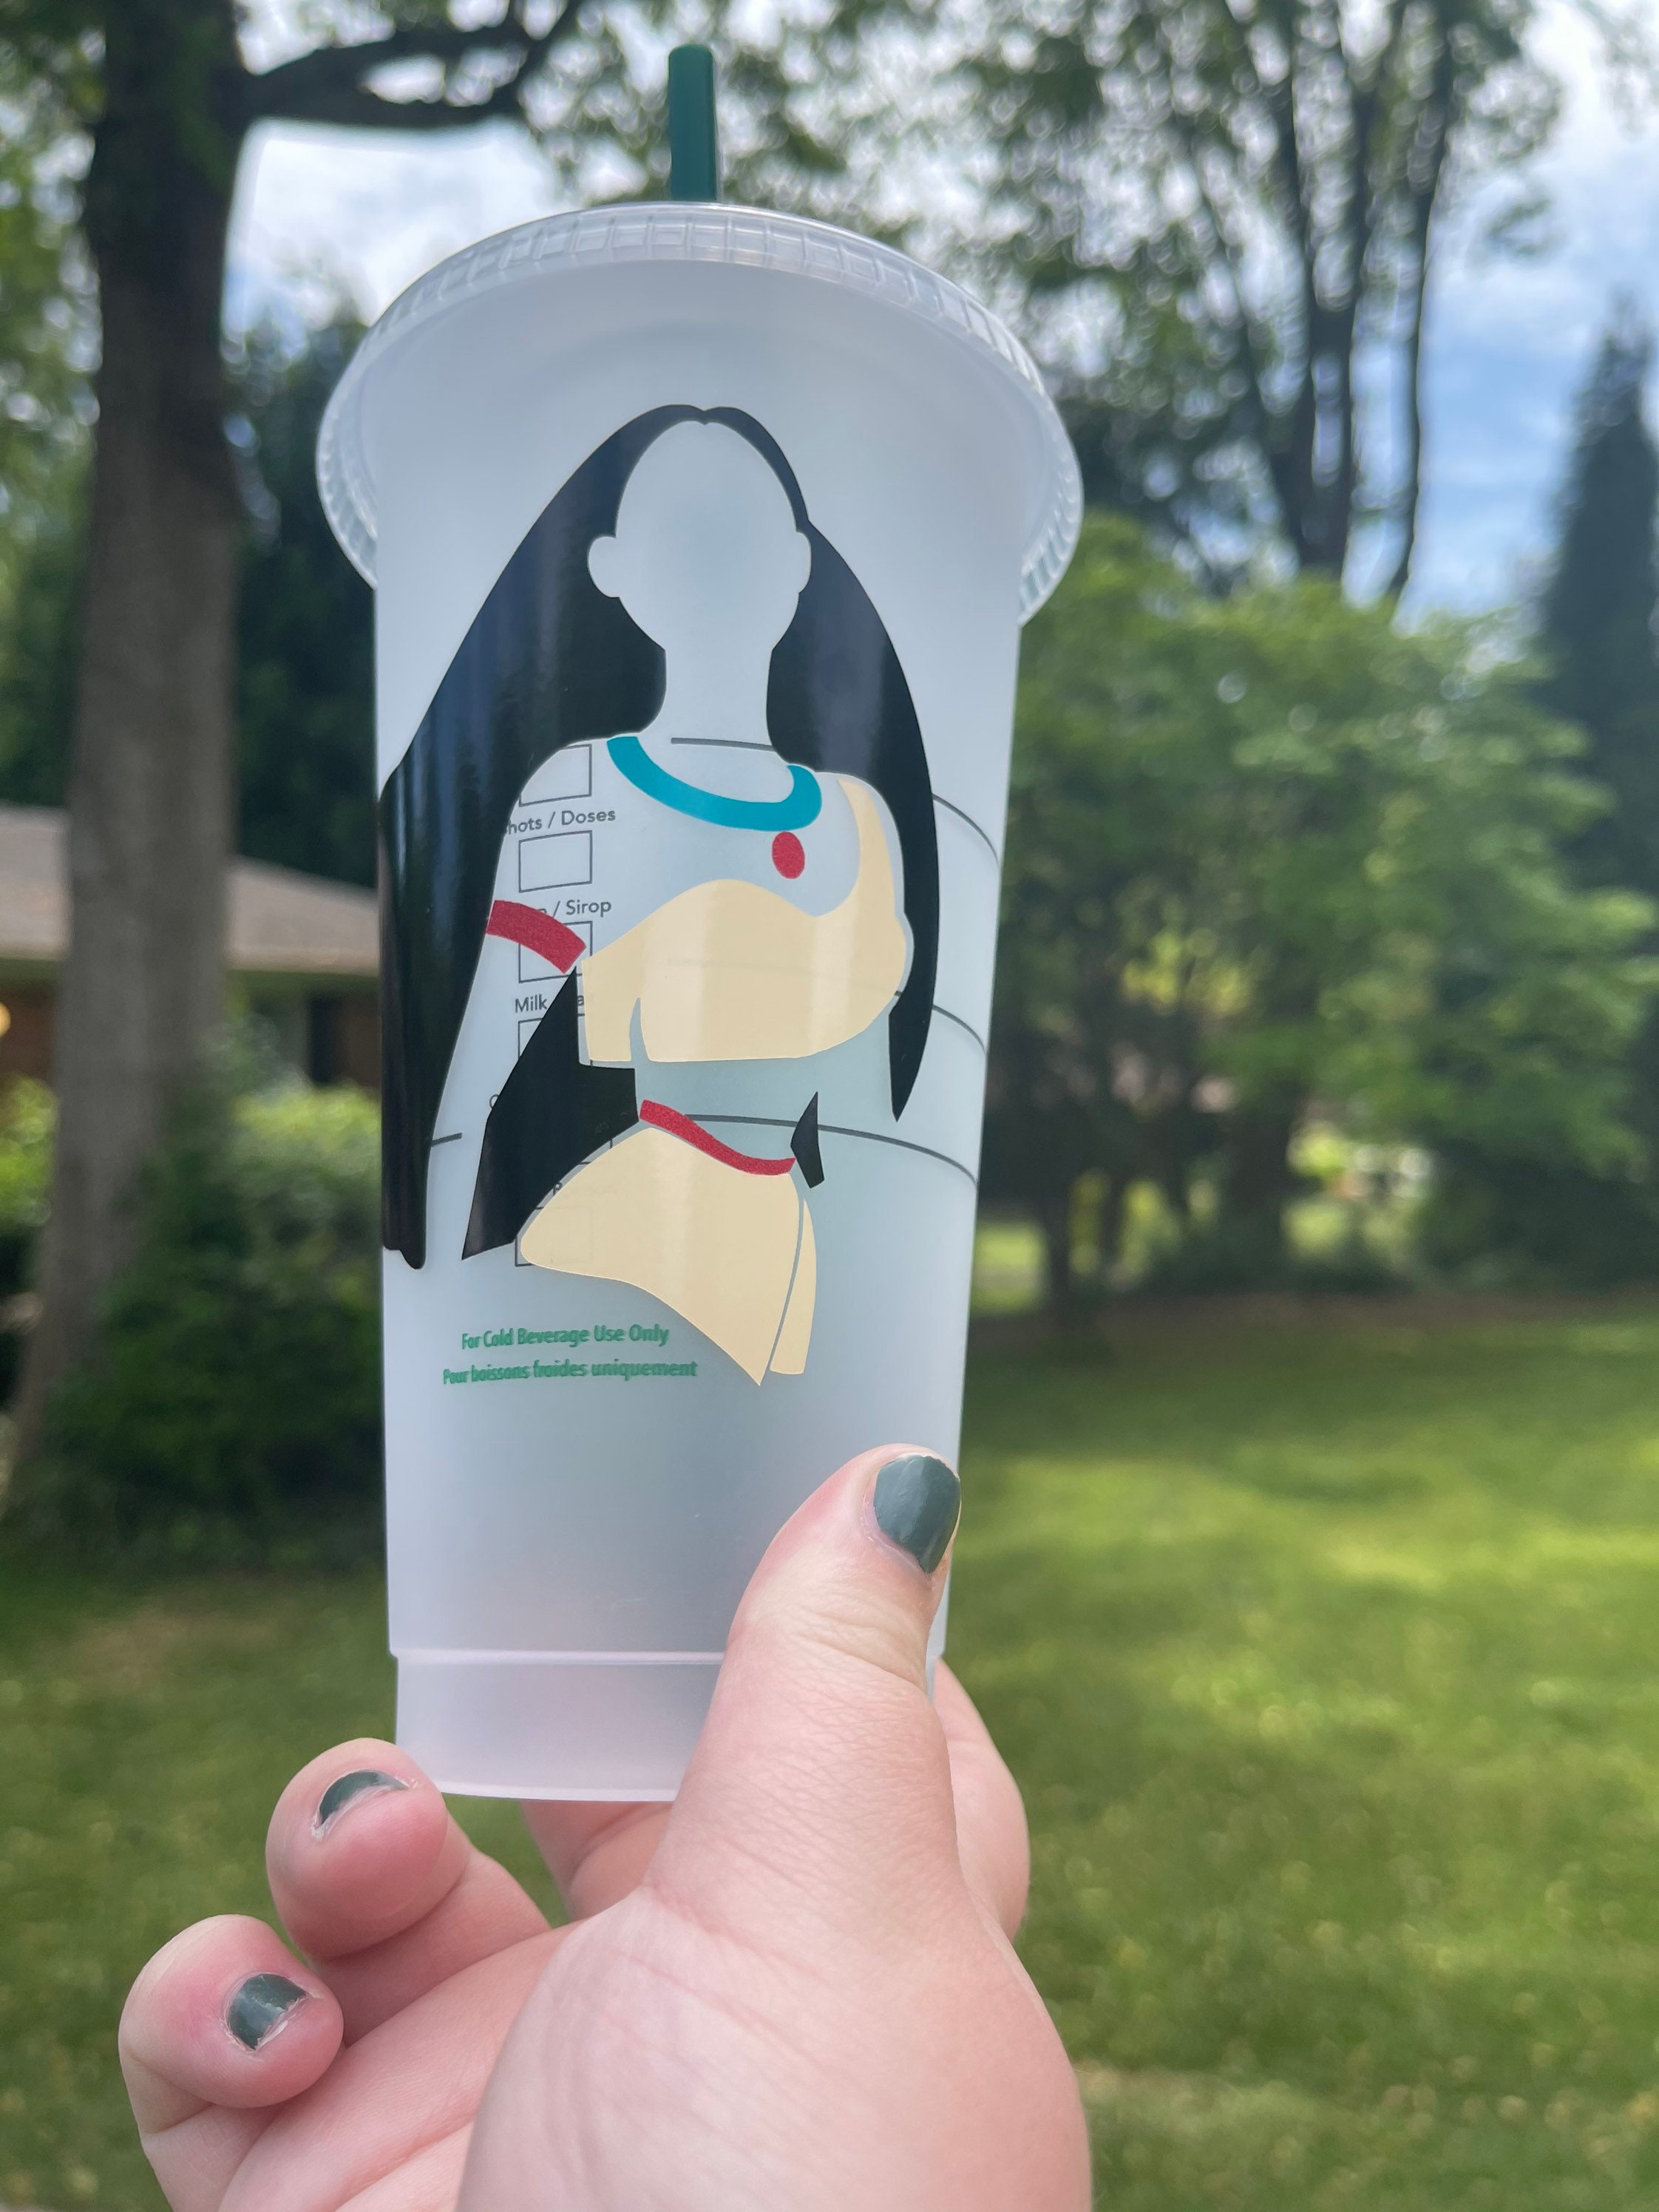 Pocahontas Disney inspired Starbucks cup Water cup,reusable cup  tumbler mug